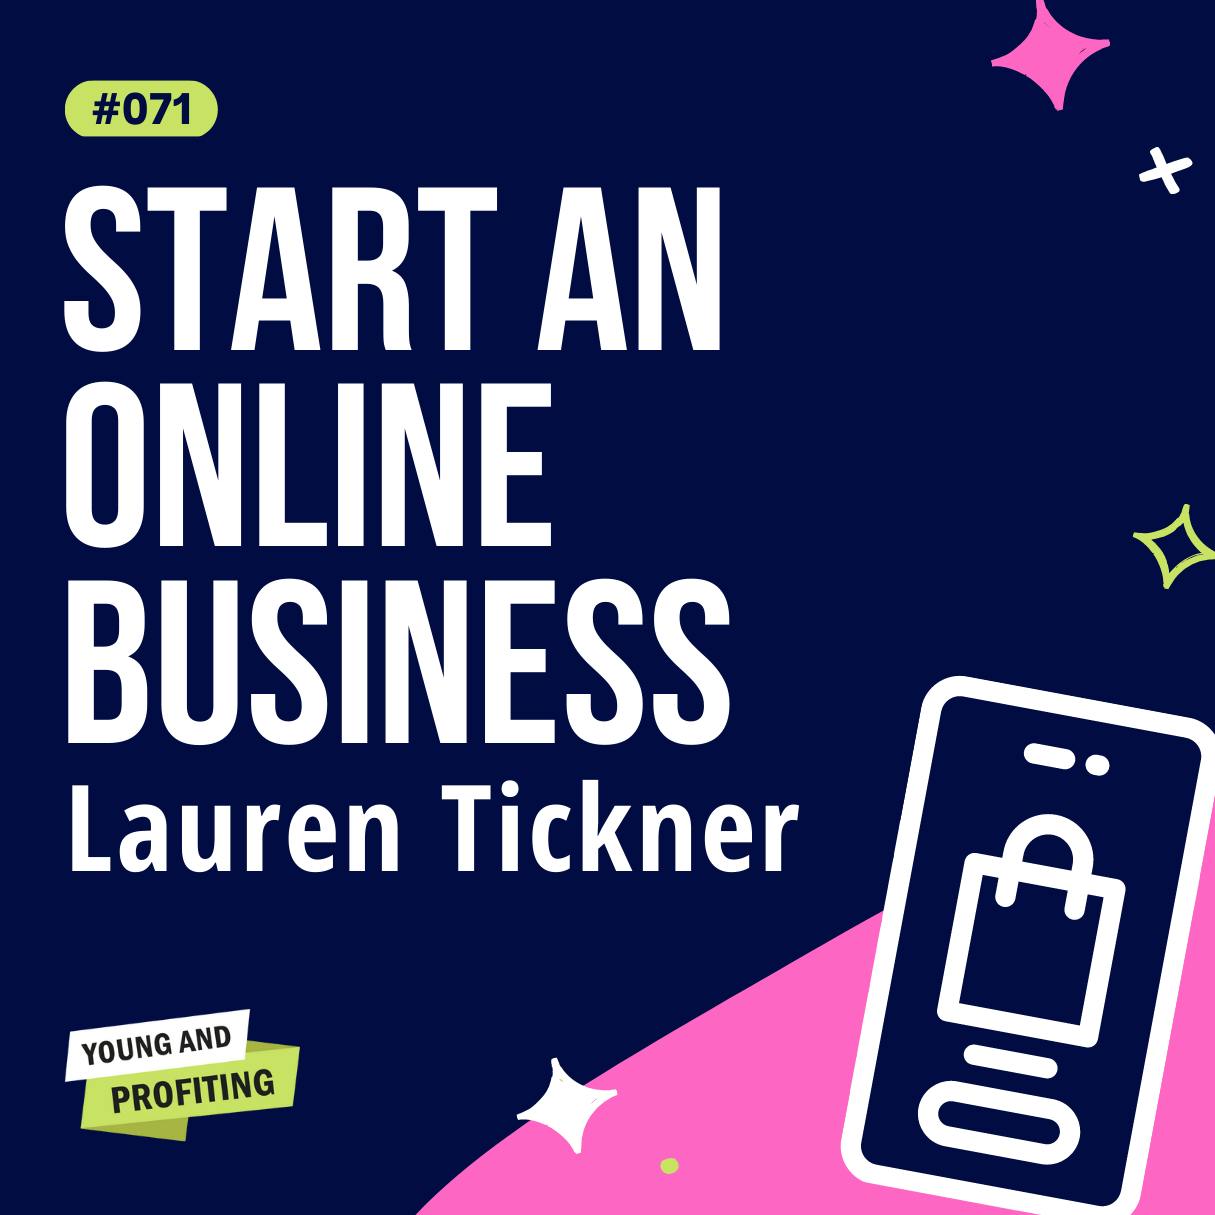 YAPClassic: Lauren Tickner on Starting An Online Business